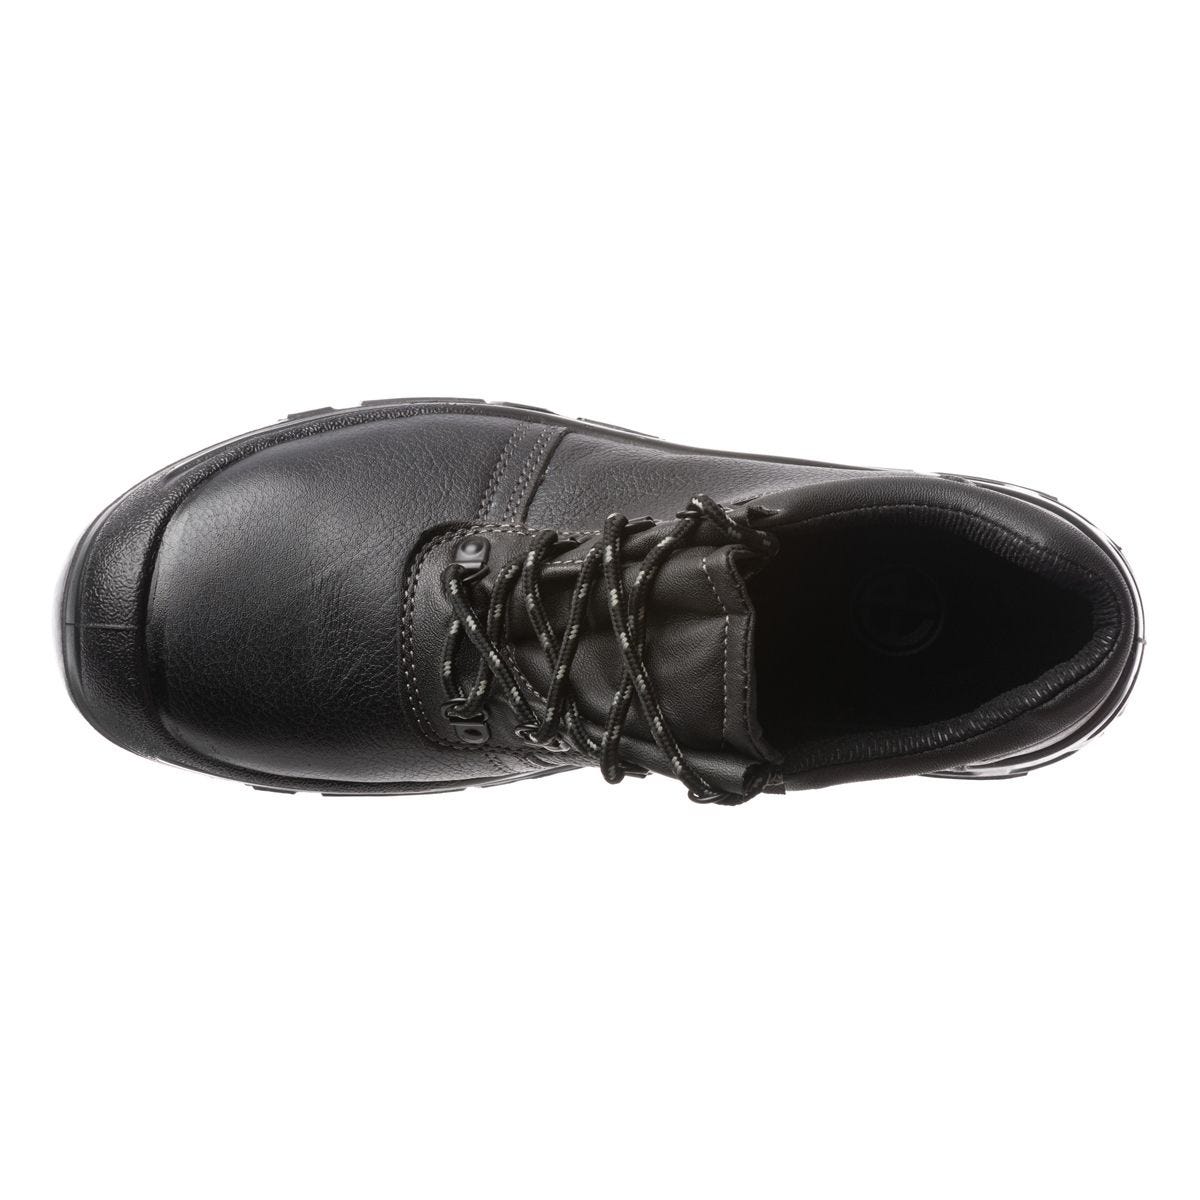 Chaussures de sécurité basses Azurite II S3 ESD noir - Coverguard - Taille 44 1